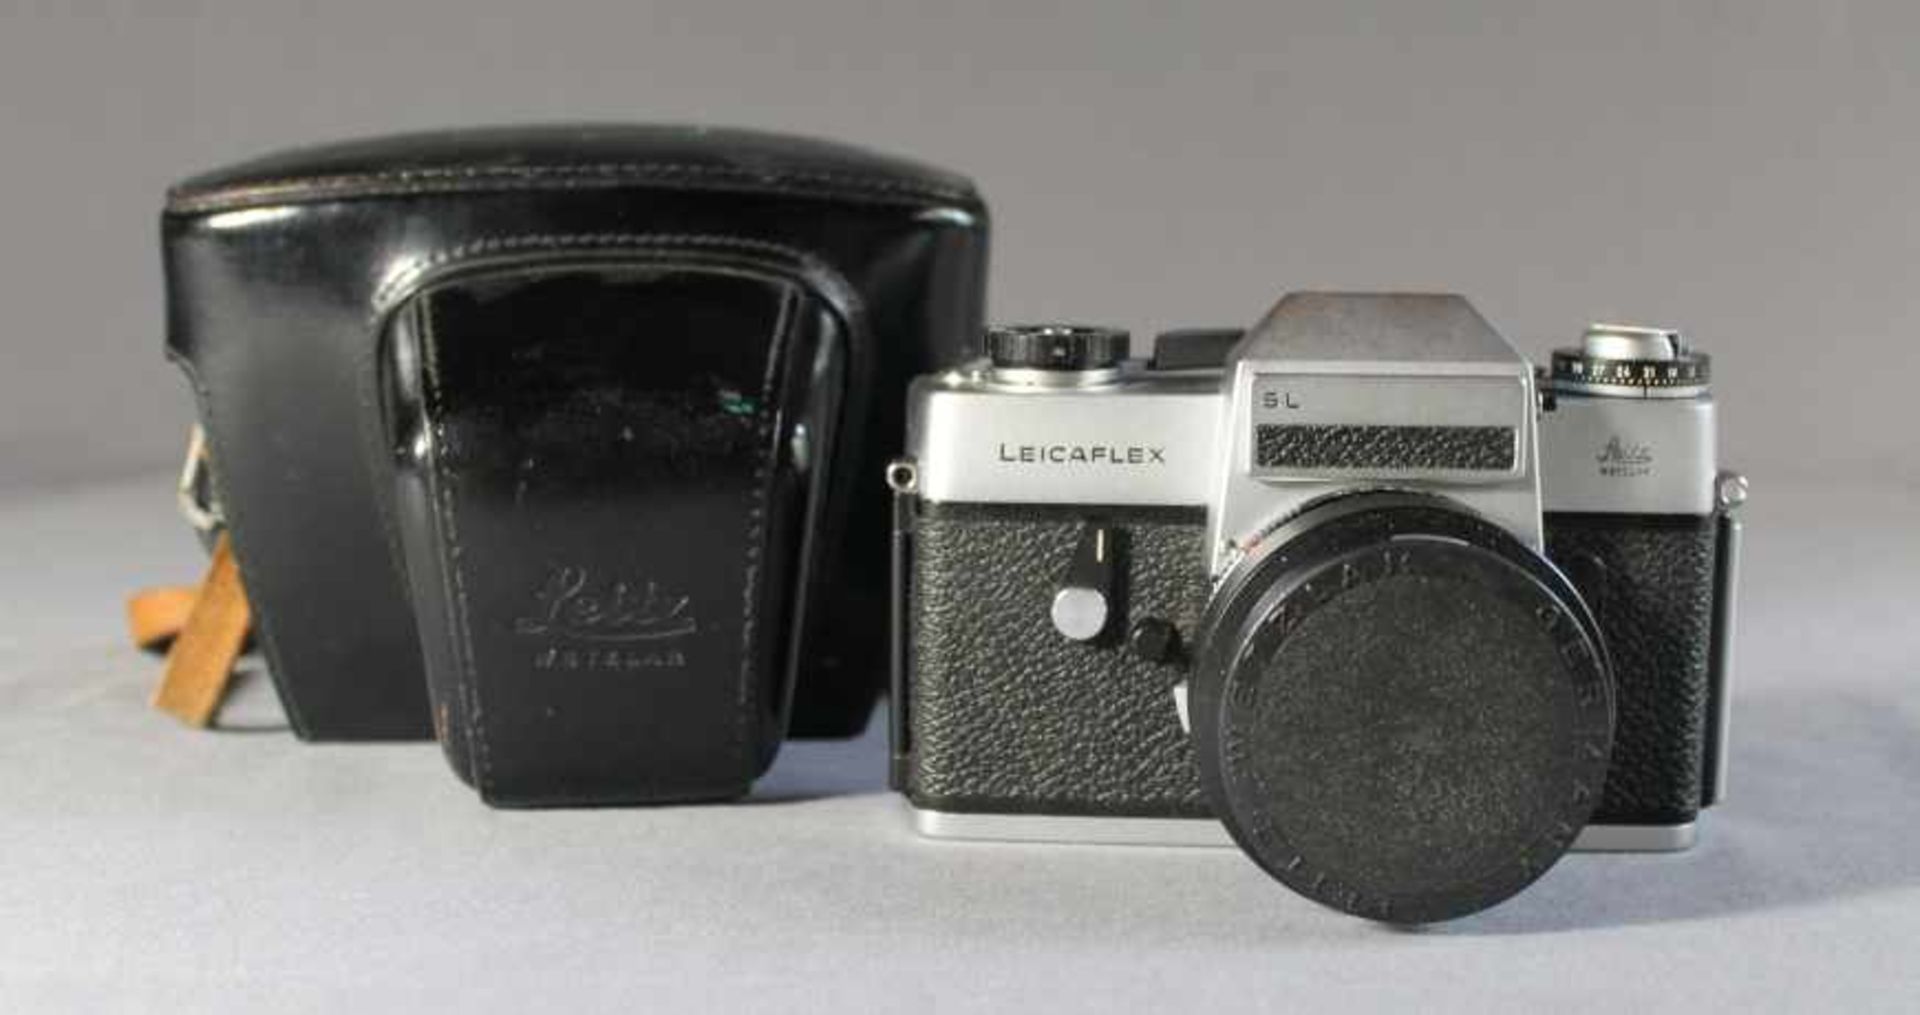 1 Kamera "Leica", Modell SL, Gehäusenr. 1370986 mit Summicron 1:2/50 und Deckel, in schwarzer